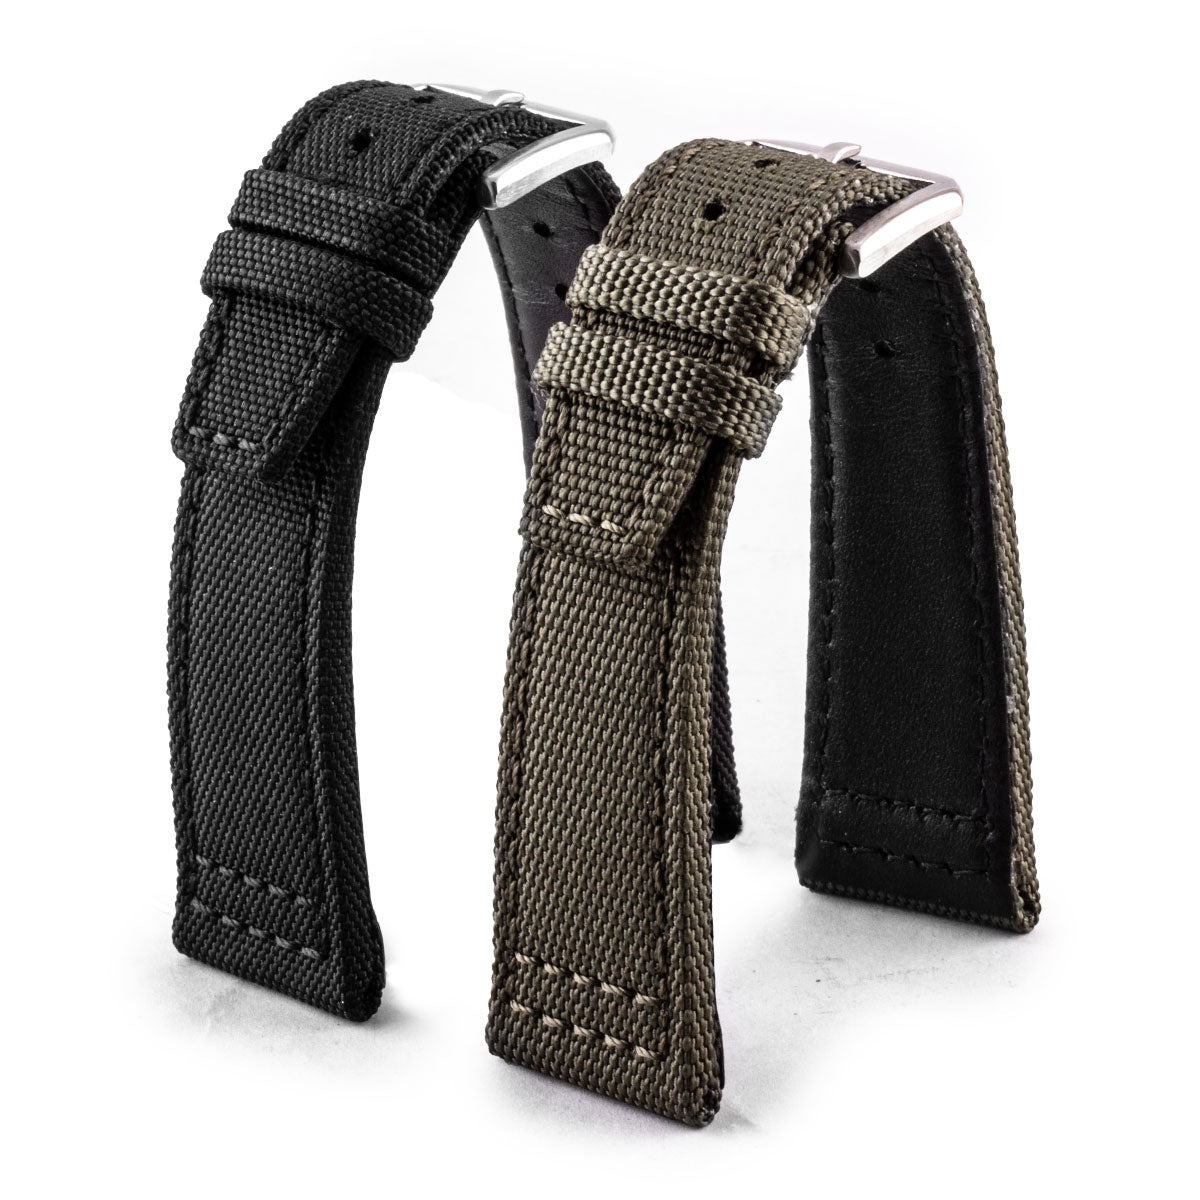 IWC Pilot - Bracelet montre type cordura / tissu -  (noir,kaki) - watch band leather strap - ABP Concept -